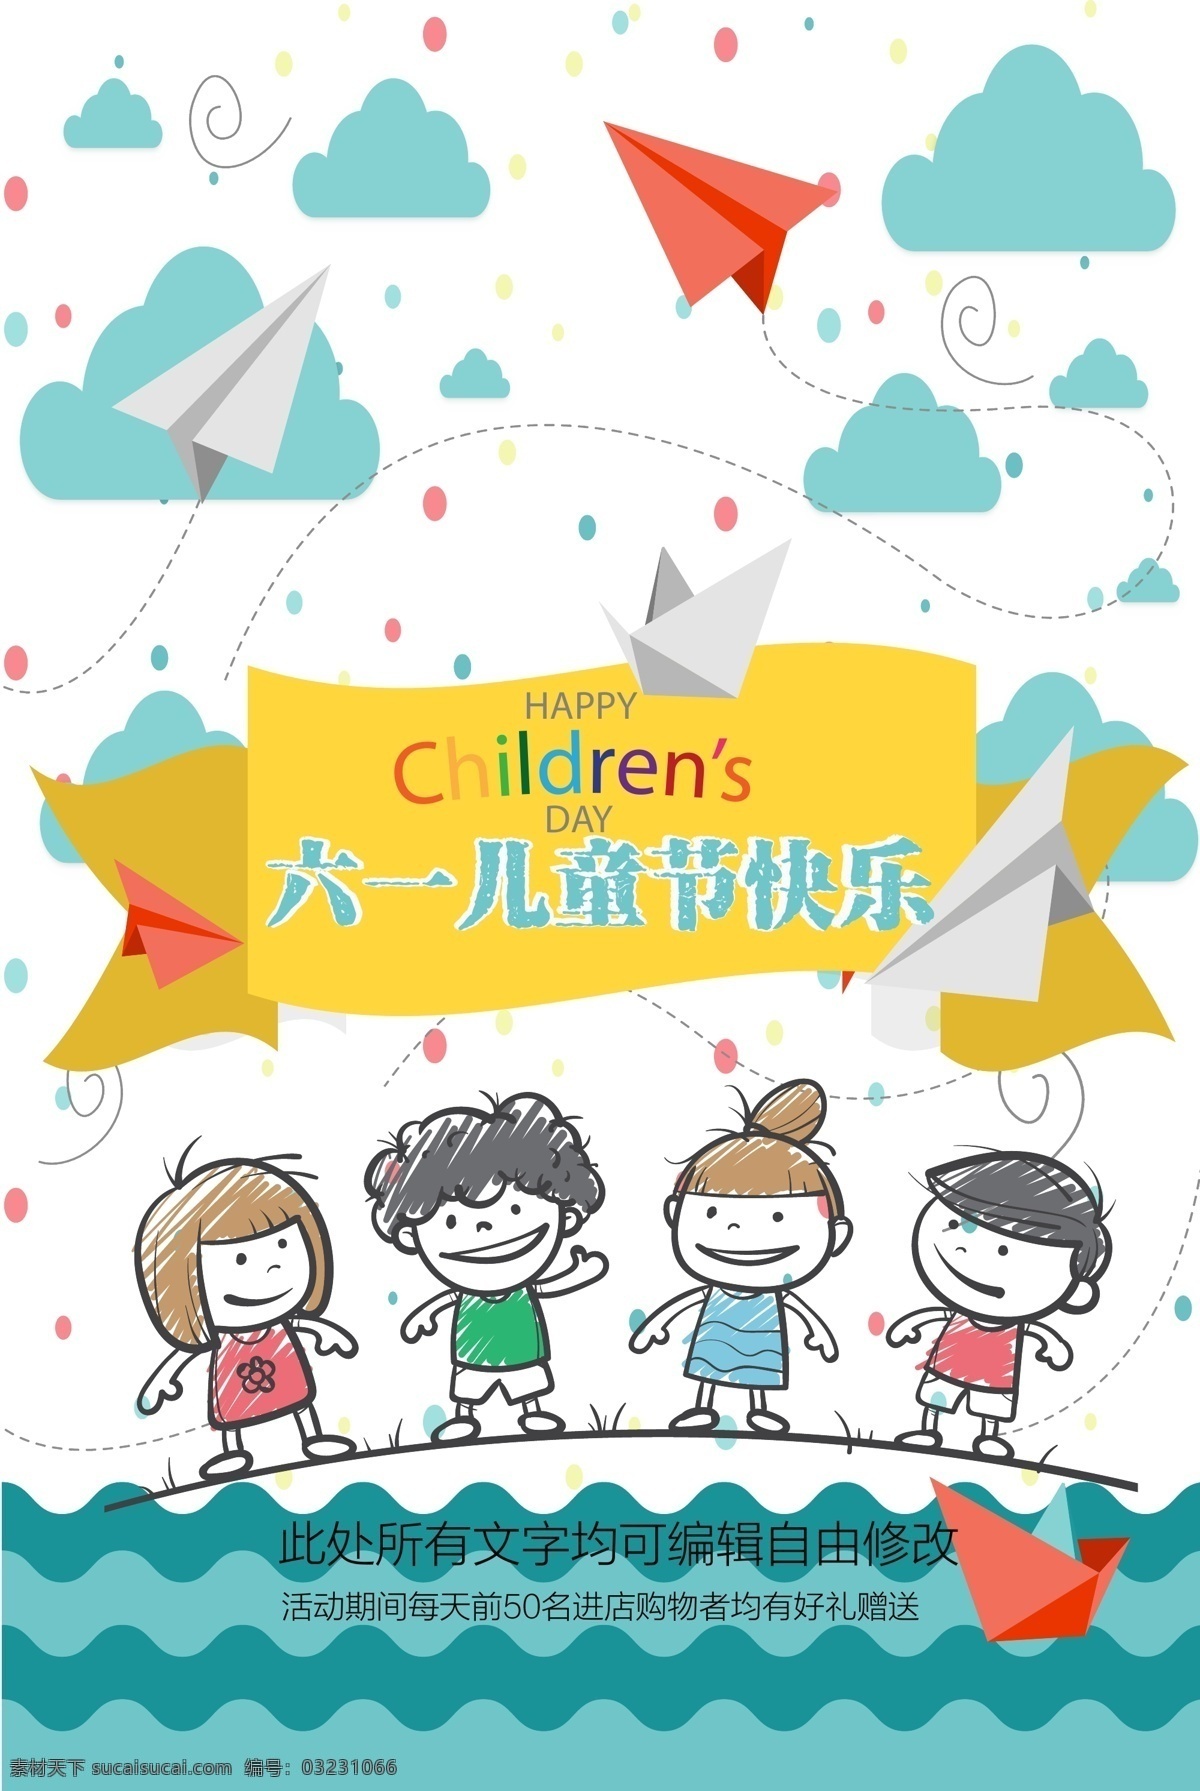 时尚 卡通 六一 节日 儿童节 六一儿童节 快乐 海报 手绘 纸飞机